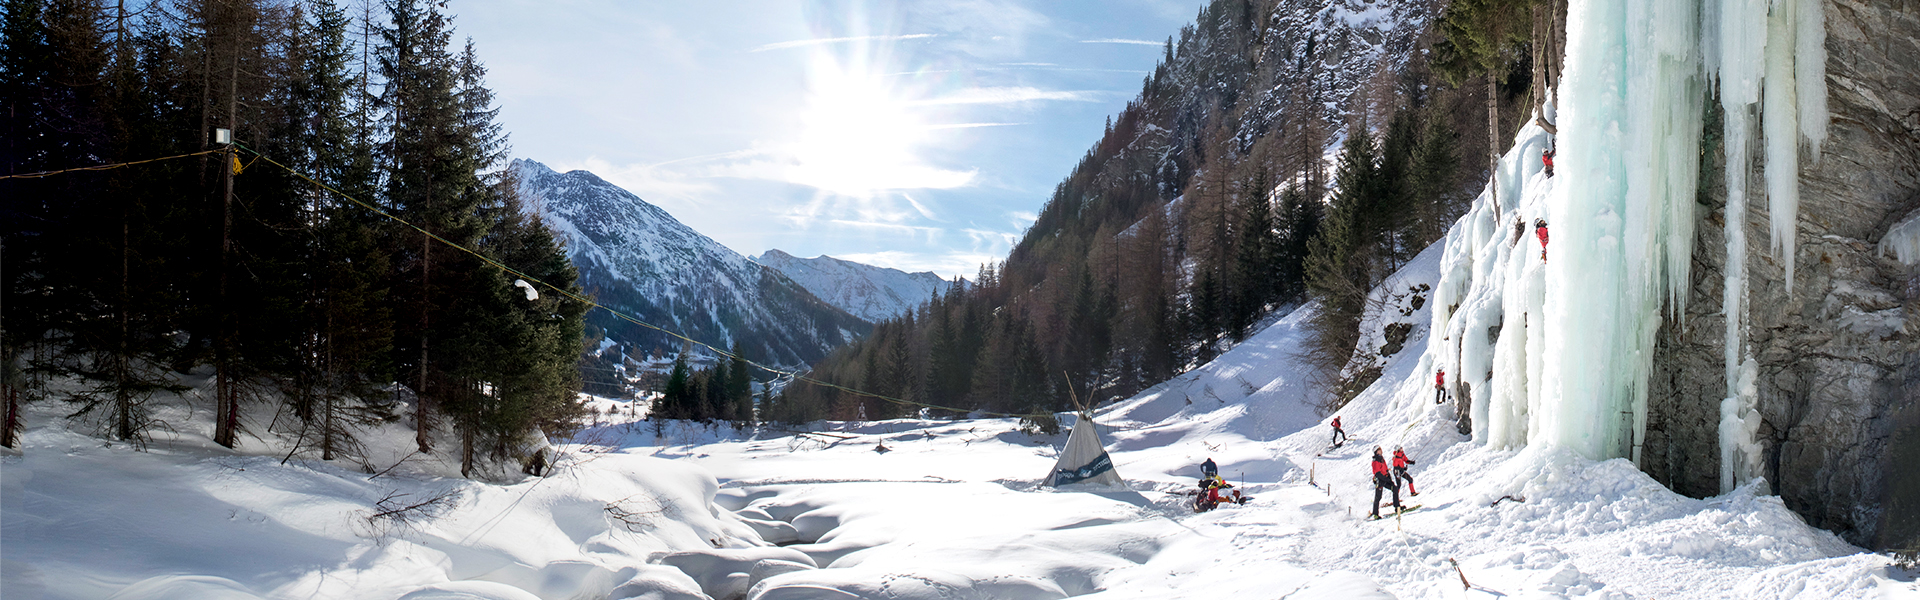 Eiskletterer klettern im Eiskletterpark in Osttirol mit strahlender Sonne und blauen Eisformationen.